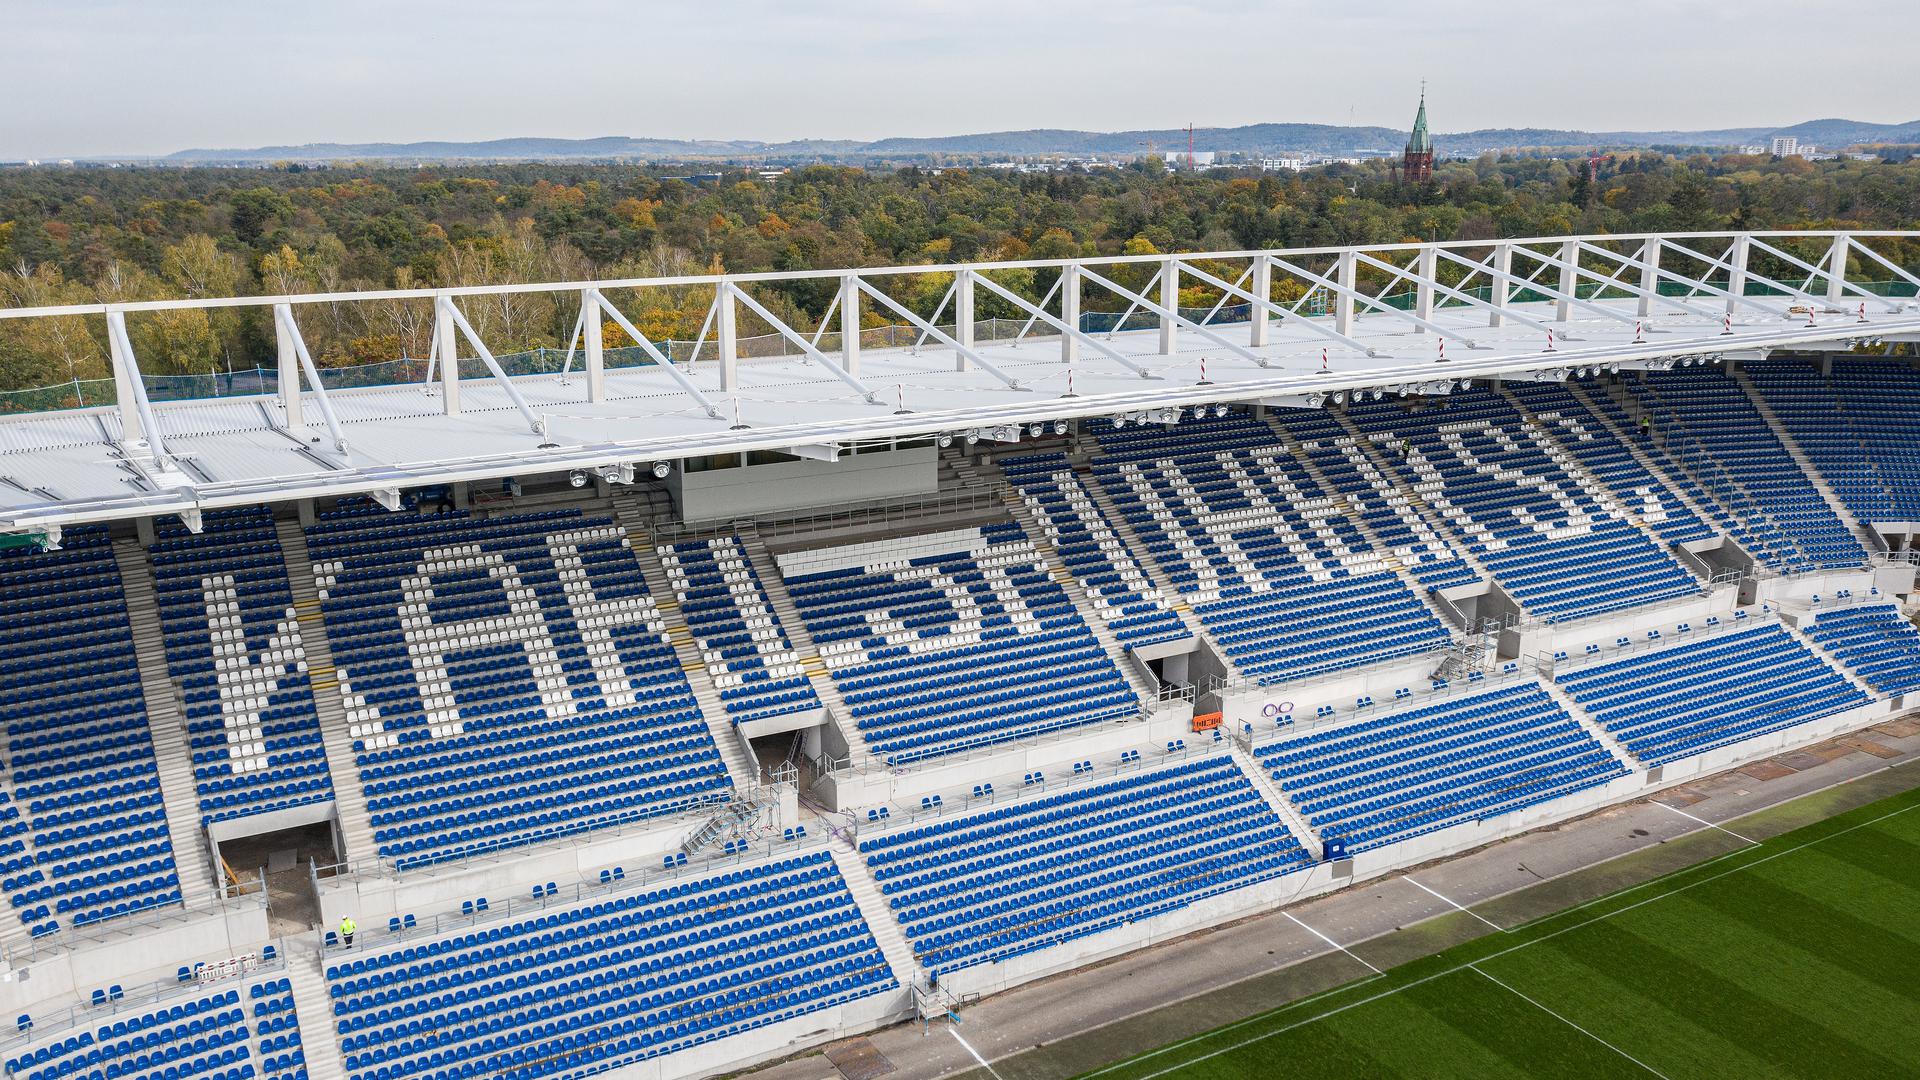 Die Marke KSC von oben: Das neue Stadion, dessen Osttribüne in Betrieb genommen wurde, ist größtes Wachstumsversprechen des Karlsruher Vereins auf Partnersuche. 